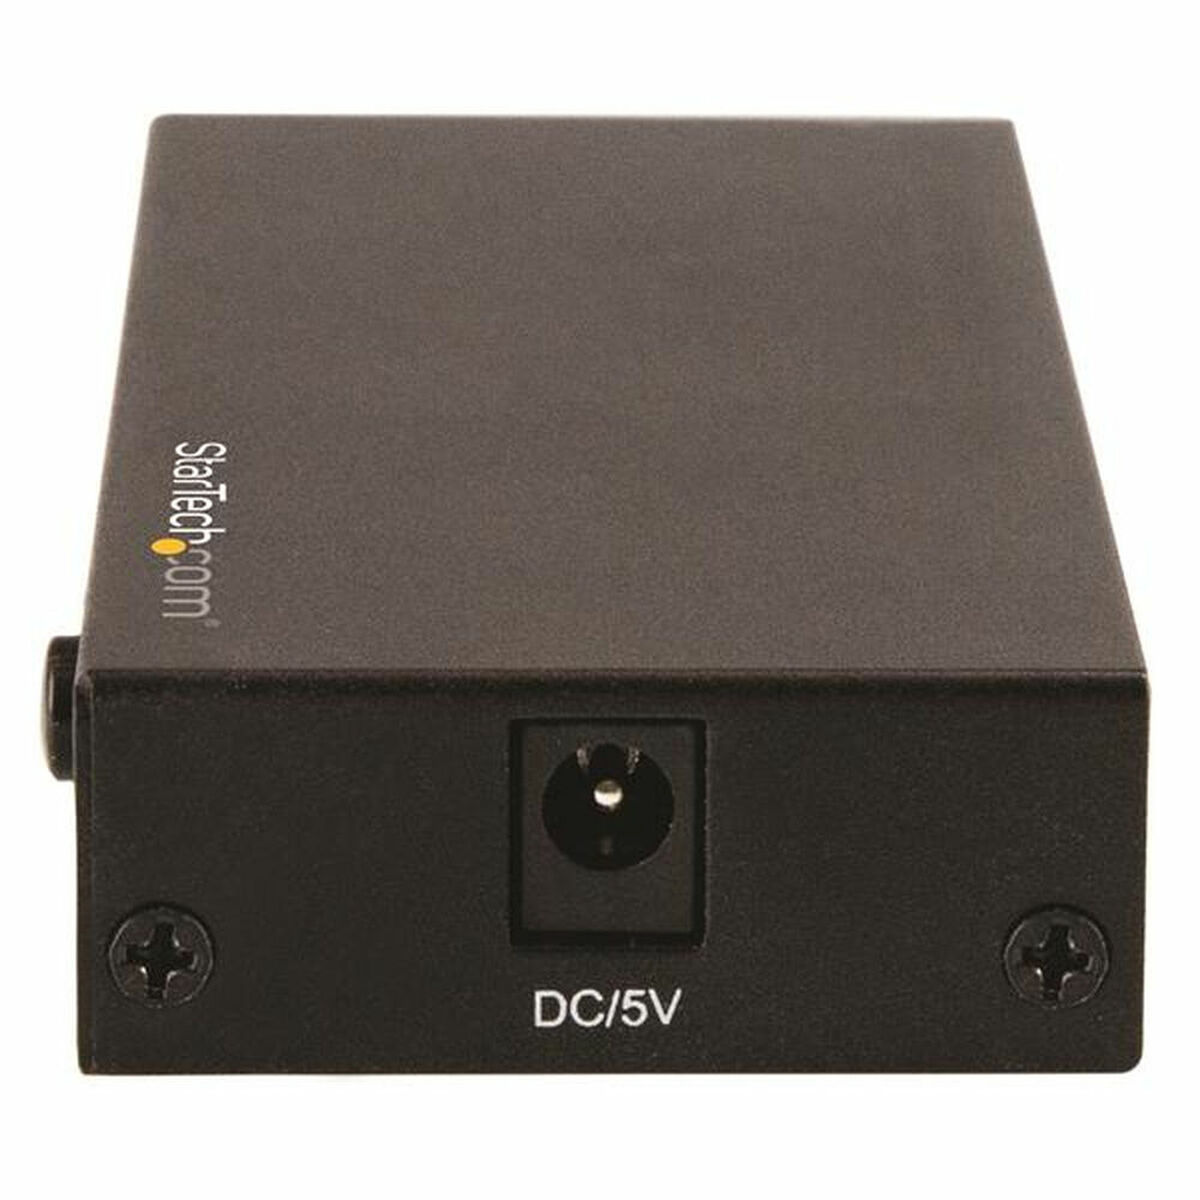 Переключатели HDMI Startech VS421HD20            Чёрный